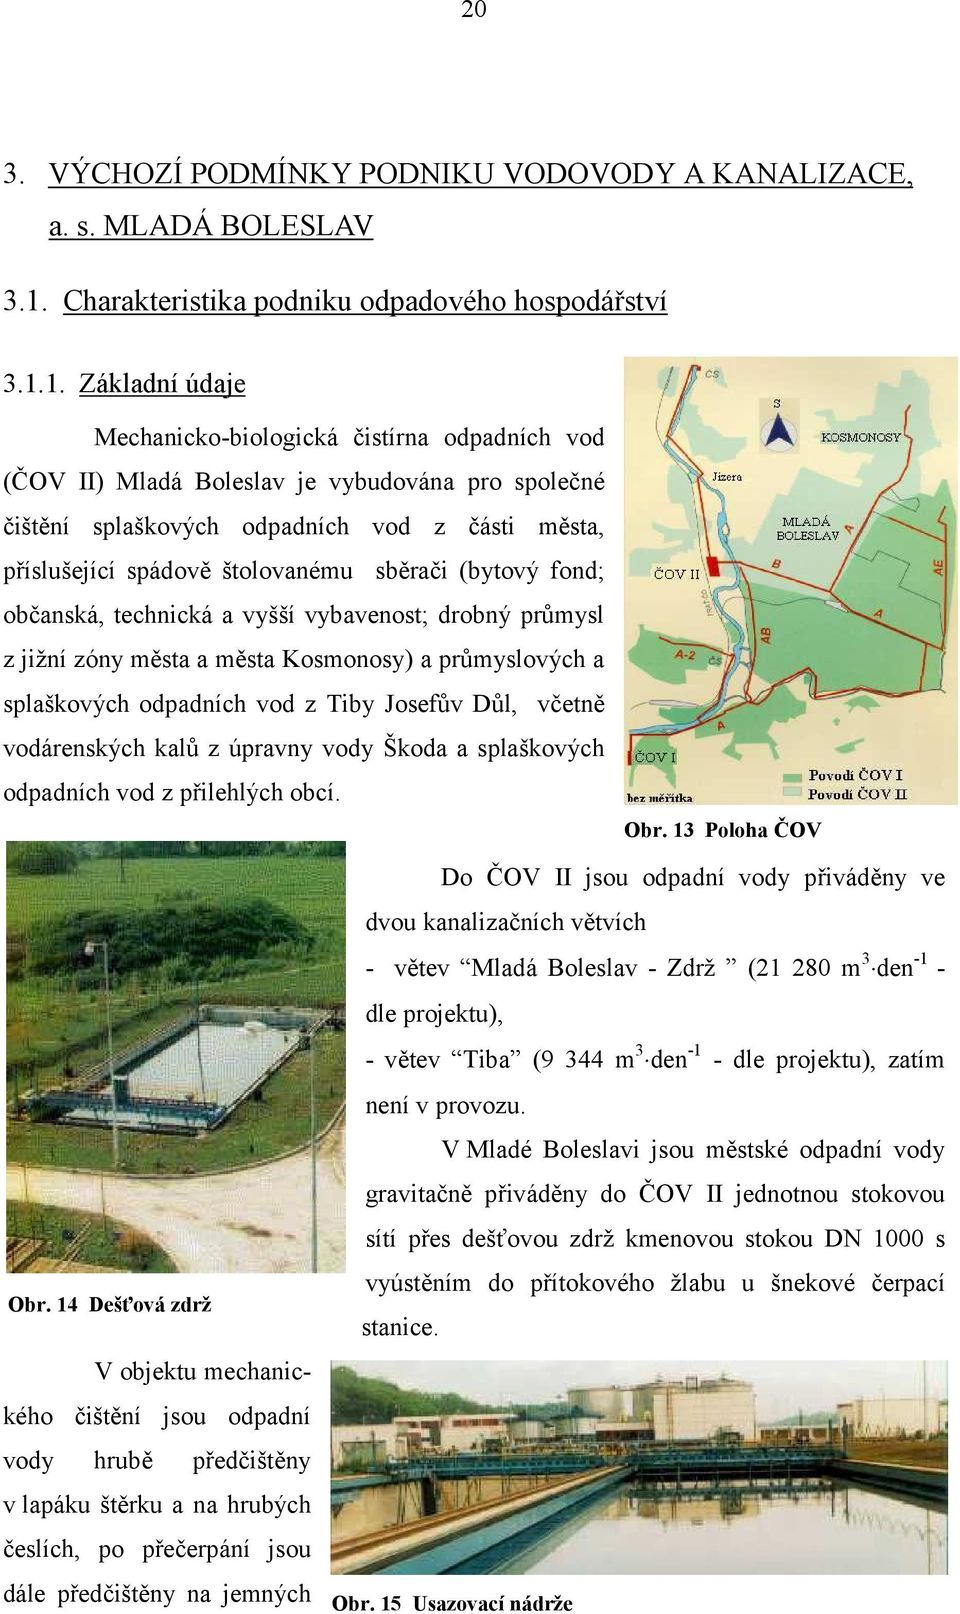 1. Základní údaje Mechanicko-biologická čistírna odpadních vod (ČOV II) Mladá Boleslav je vybudována pro společné čištění splaškových odpadních vod z části města, příslušející spádově štolovanému